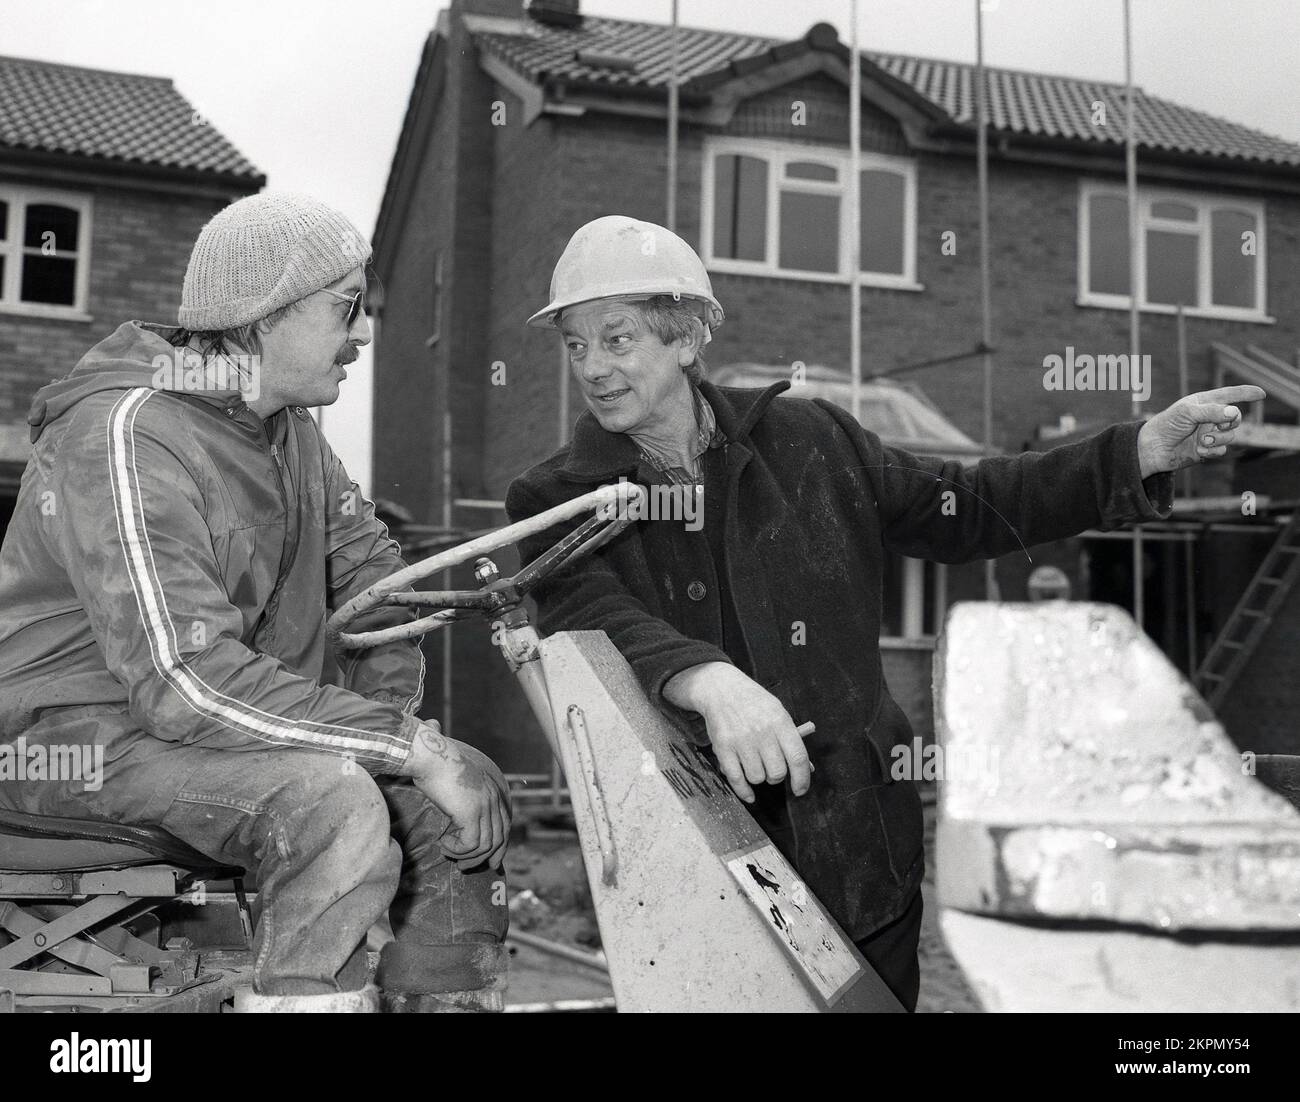 1980s, due costruttori in cantiere, in chat, uno seduto su un carrello di carico pesante, Inghilterra, Regno Unito. Foto Stock